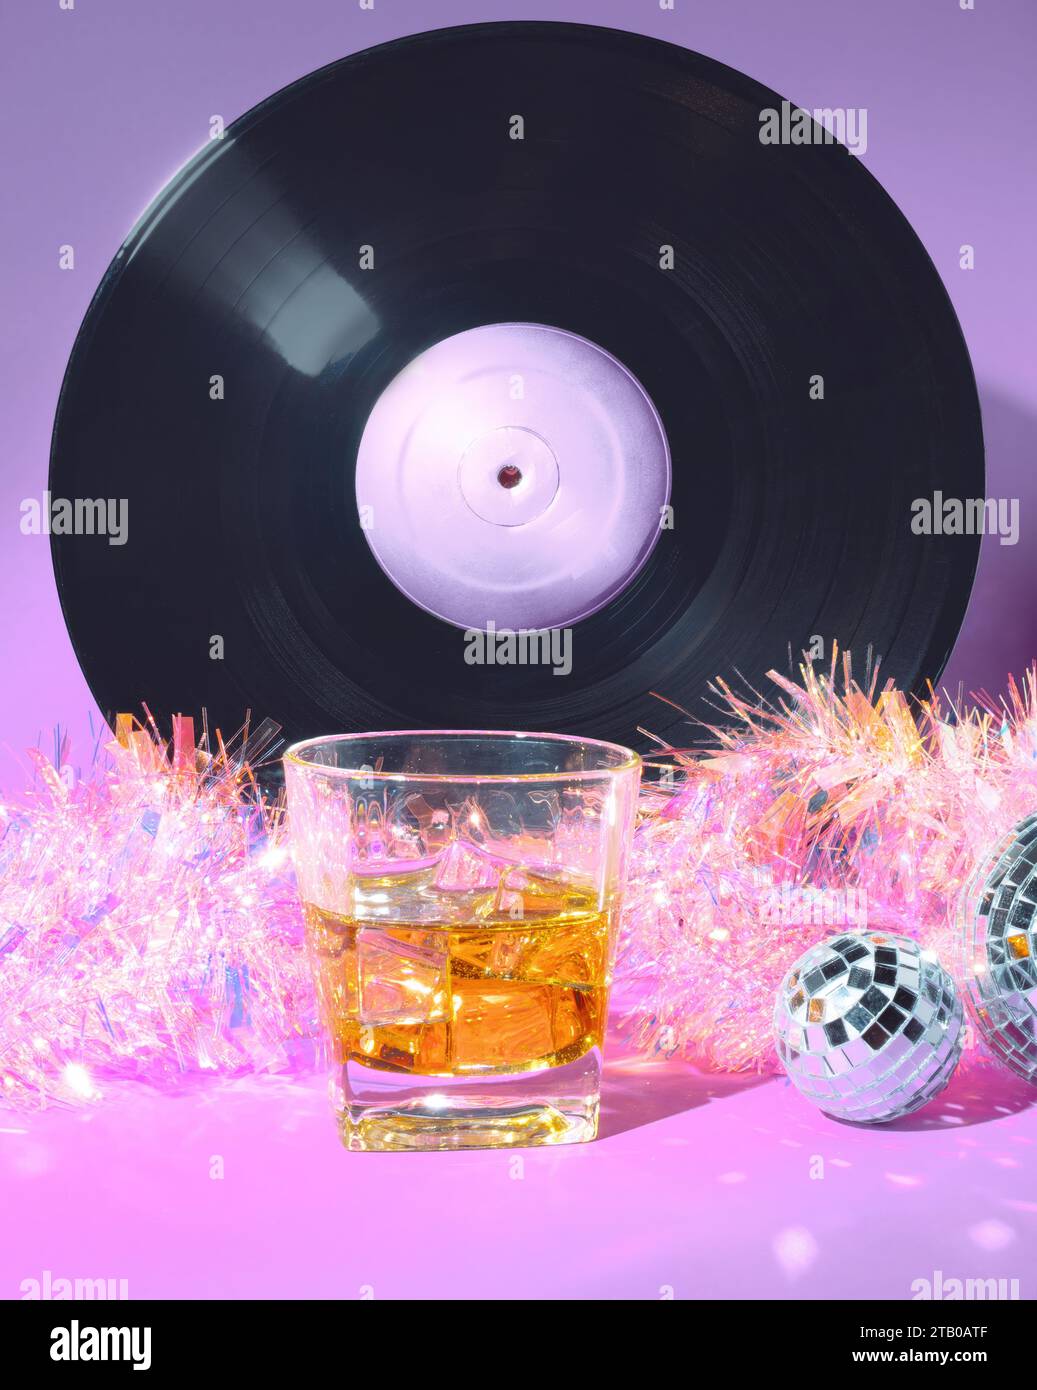 Un bicchiere di Scotch Whiskey, Un disco vinilico, palle a specchio e Tinsel natalizio olografico su sfondo rosa e viola pastello Foto Stock